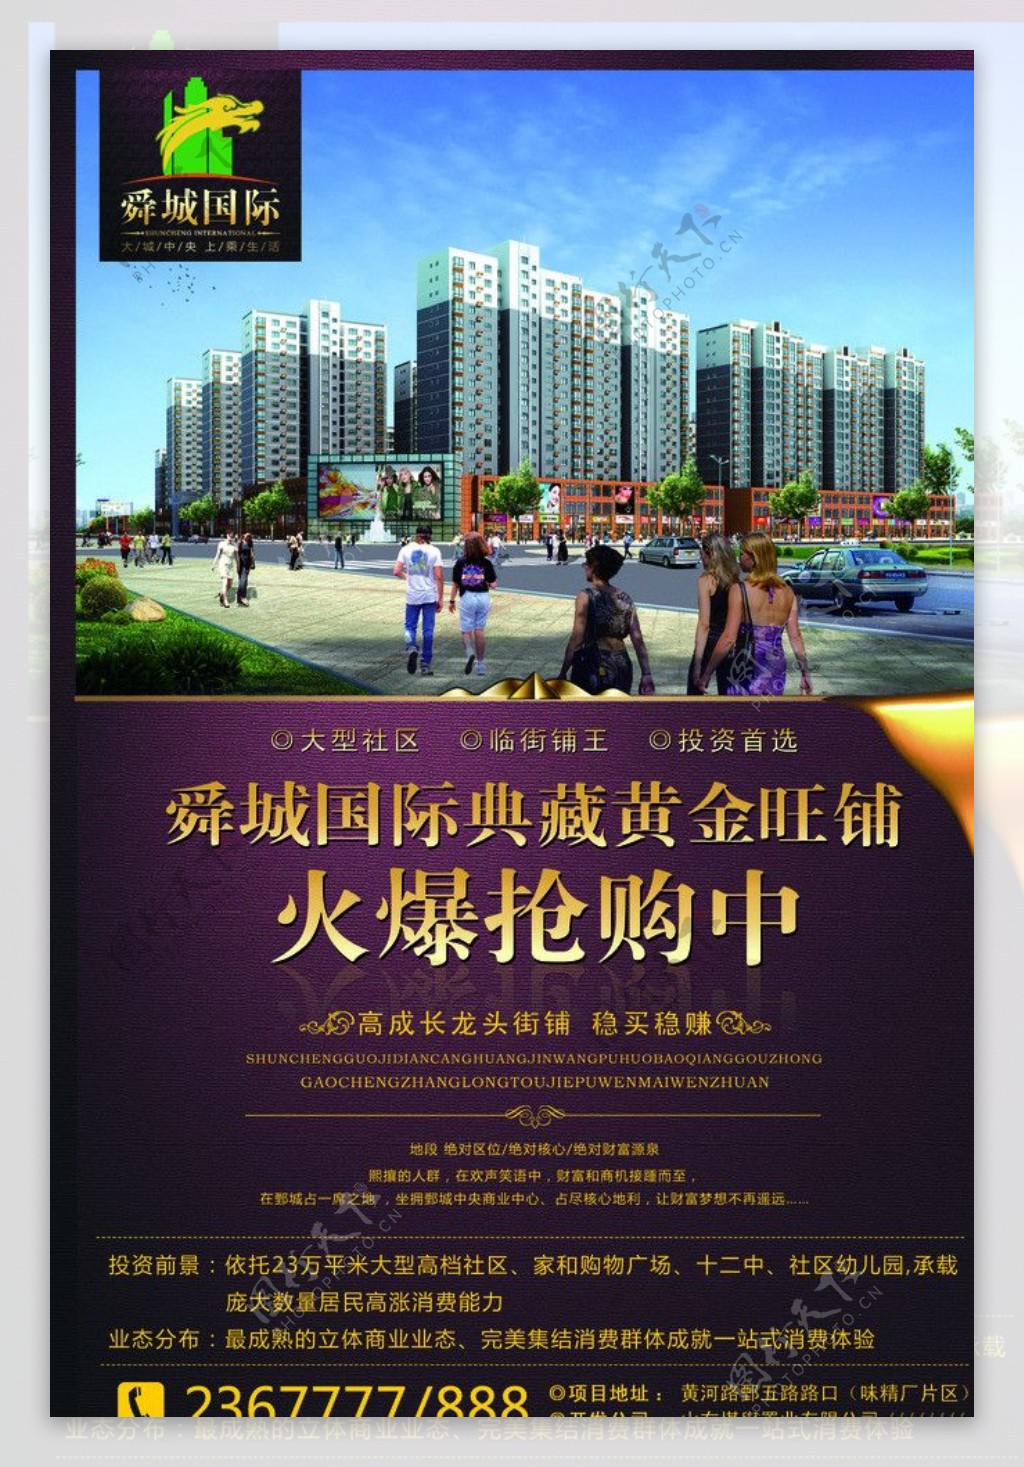 舜城国际商业宣传彩页正面图片